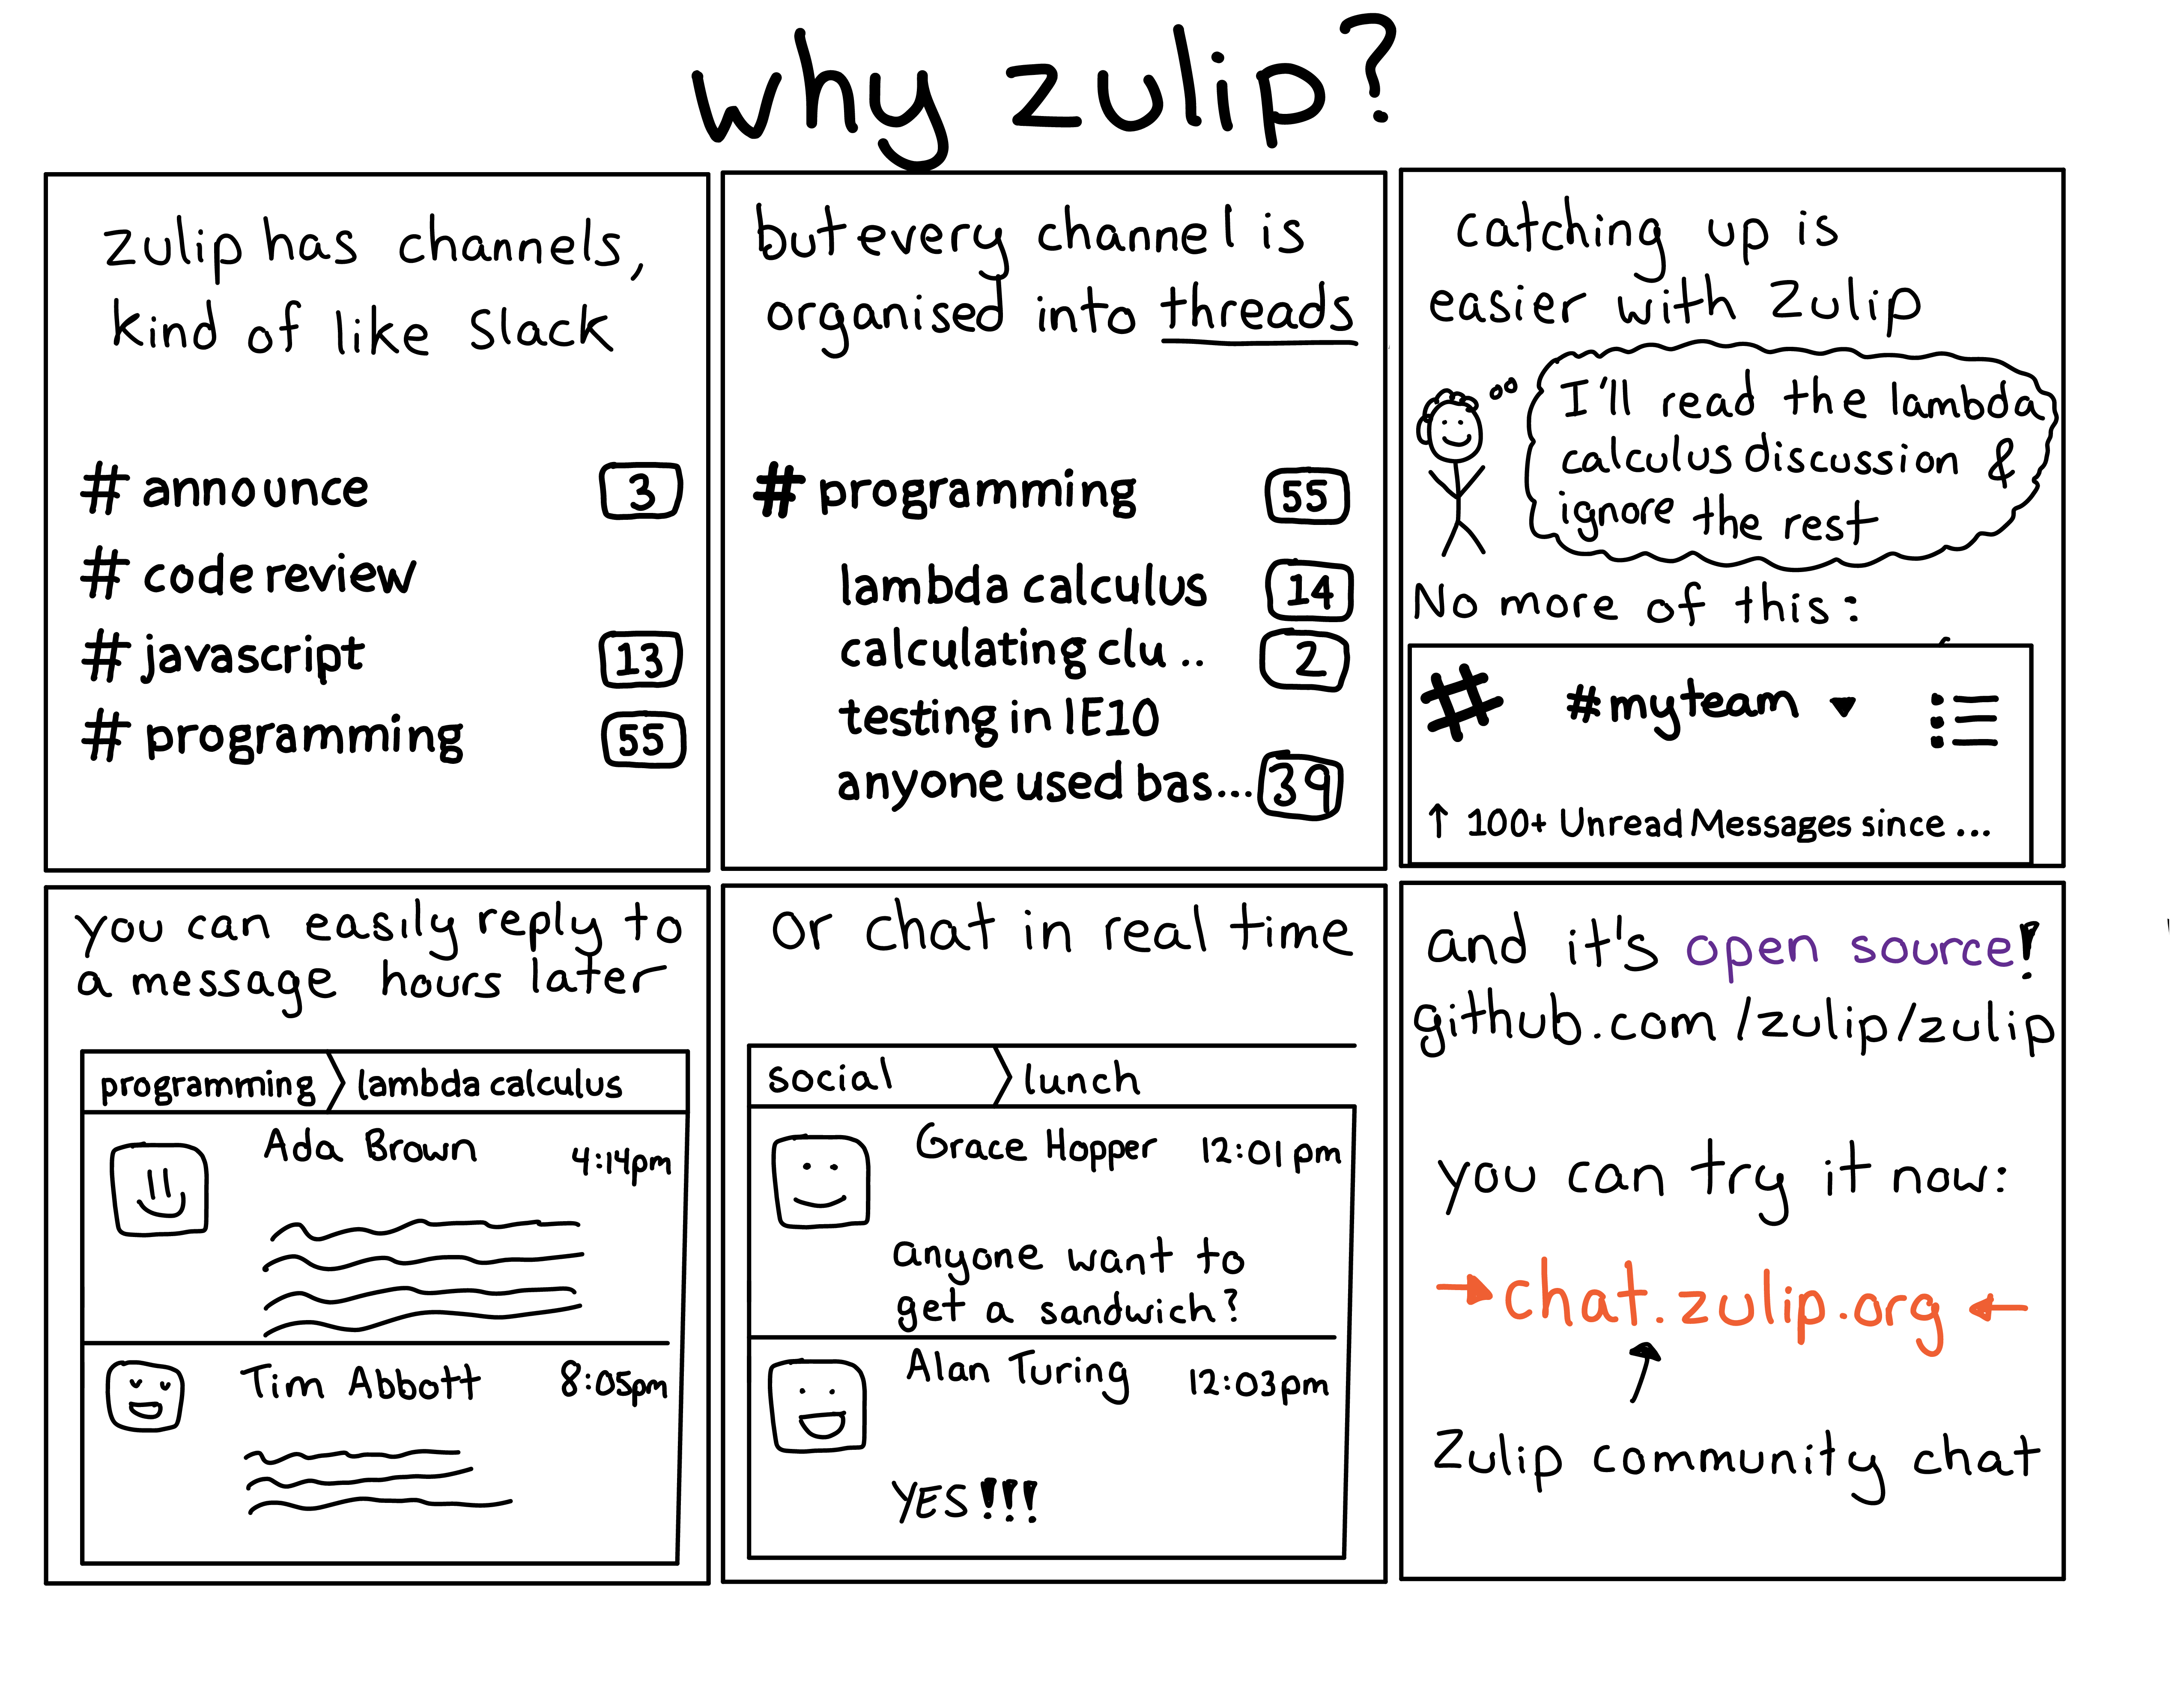 Giới thiệu về Zulip - Ứng dụng nhắn tin và quản lý công việc hiệu quả